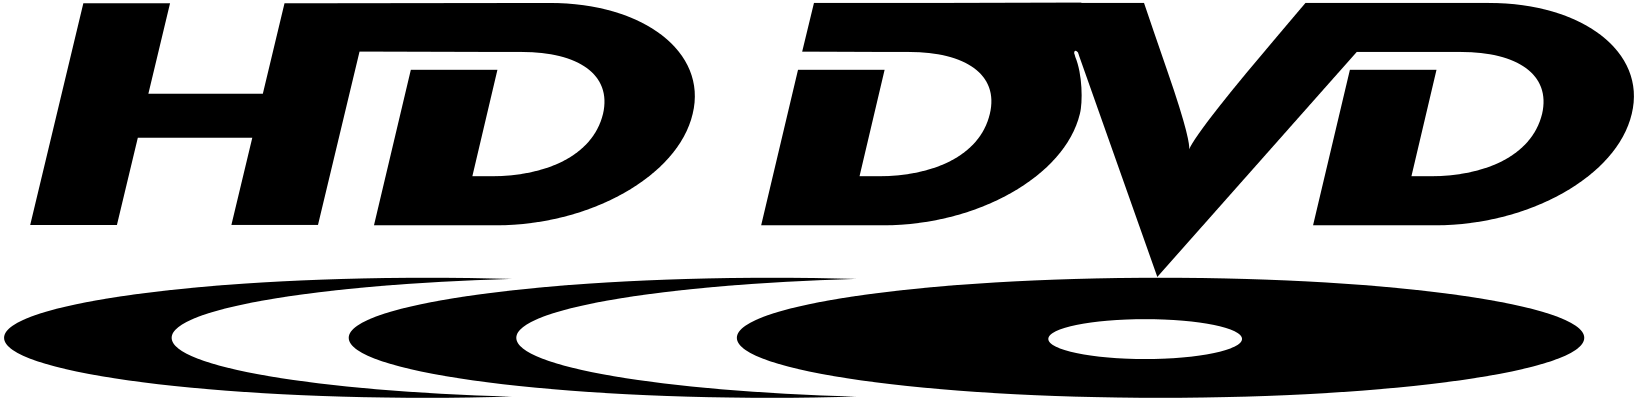 DVD Logo Transparent